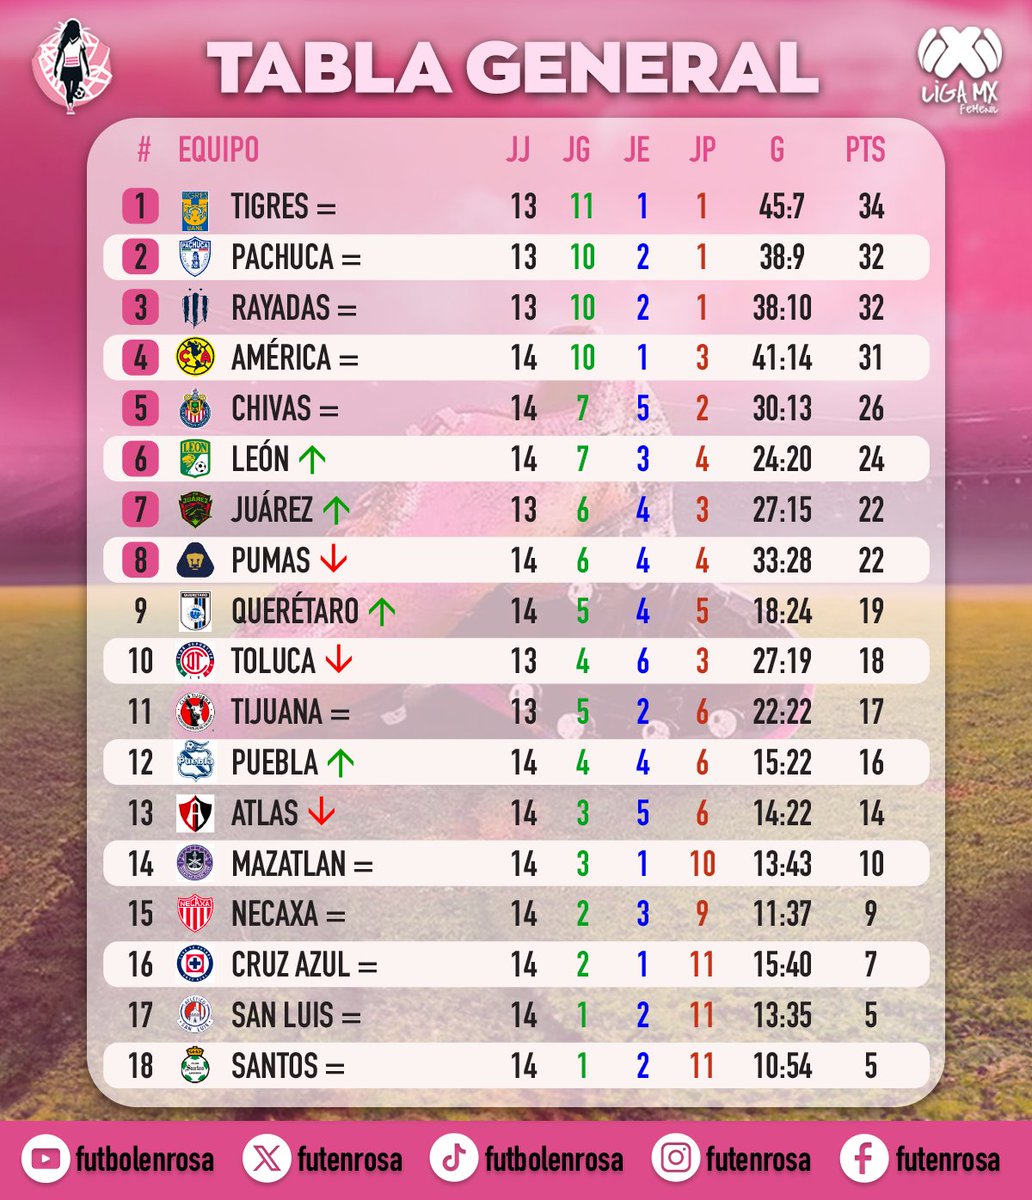 Así queda la tabla de posiciones.. ¿cómo van sus equipos?
#ligamxfemenil #ligamx #soccer #futbolfemenino #viral #parati